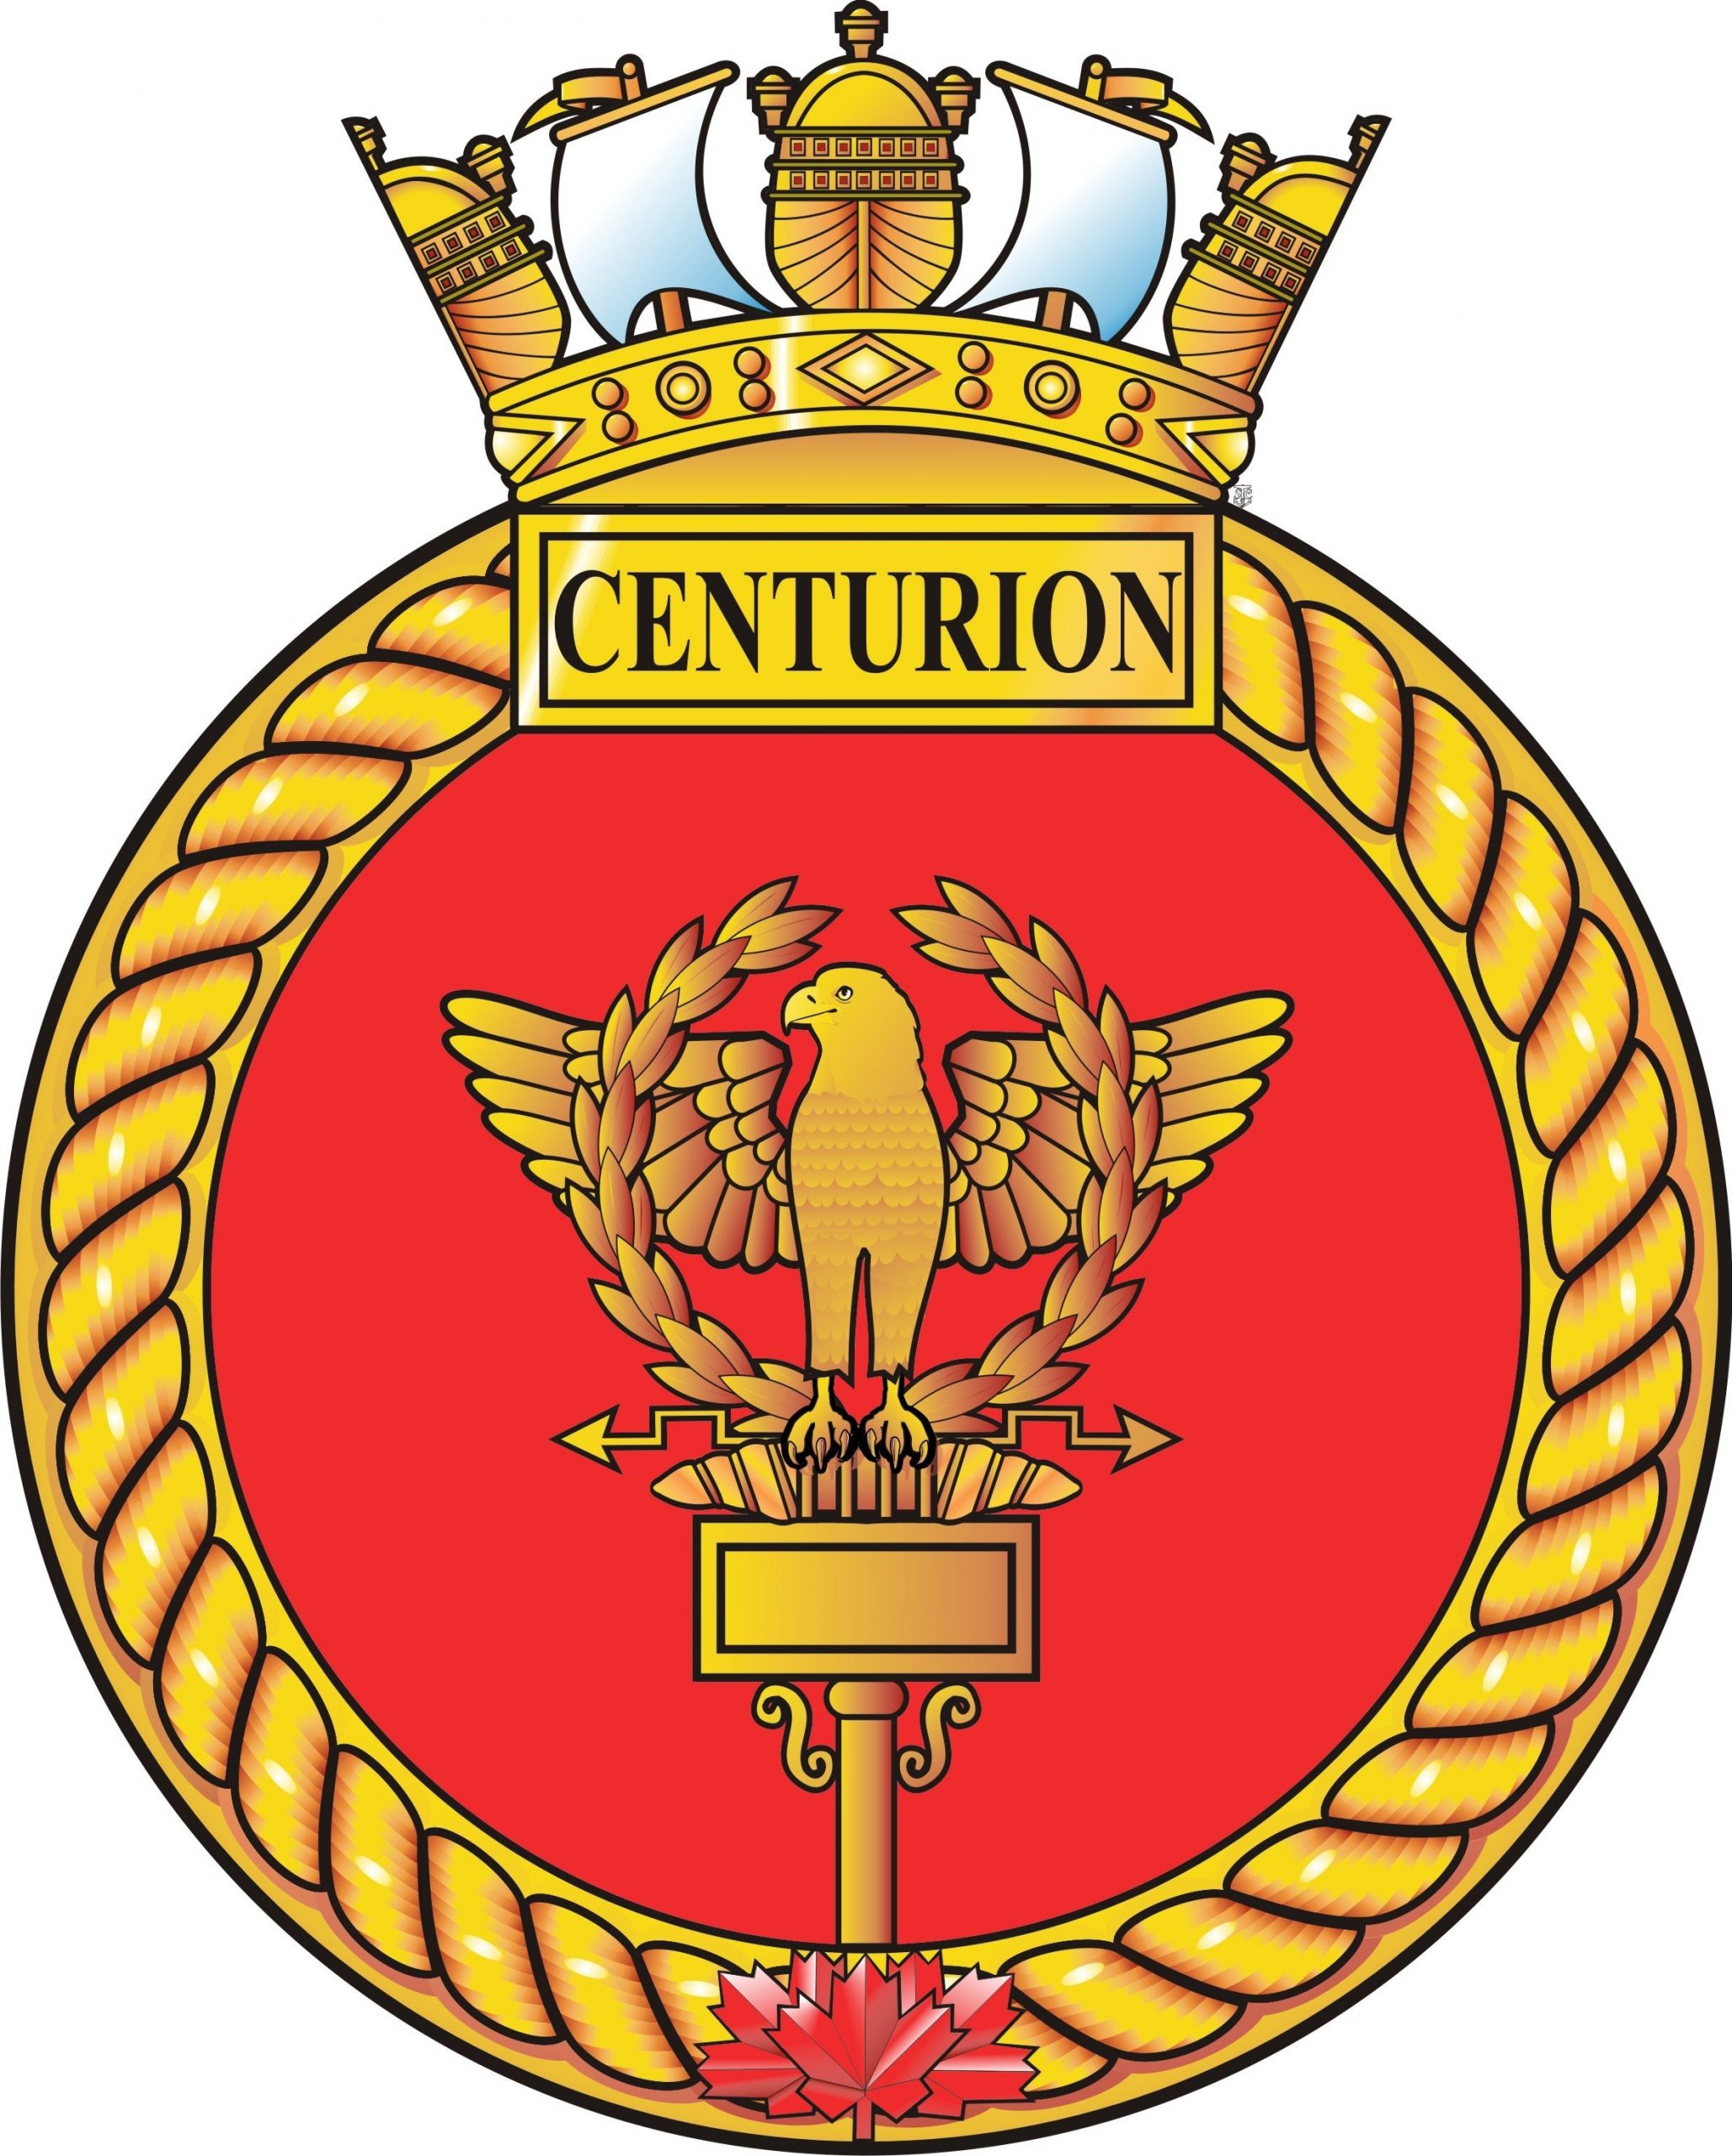 319 RCSCC Centurion